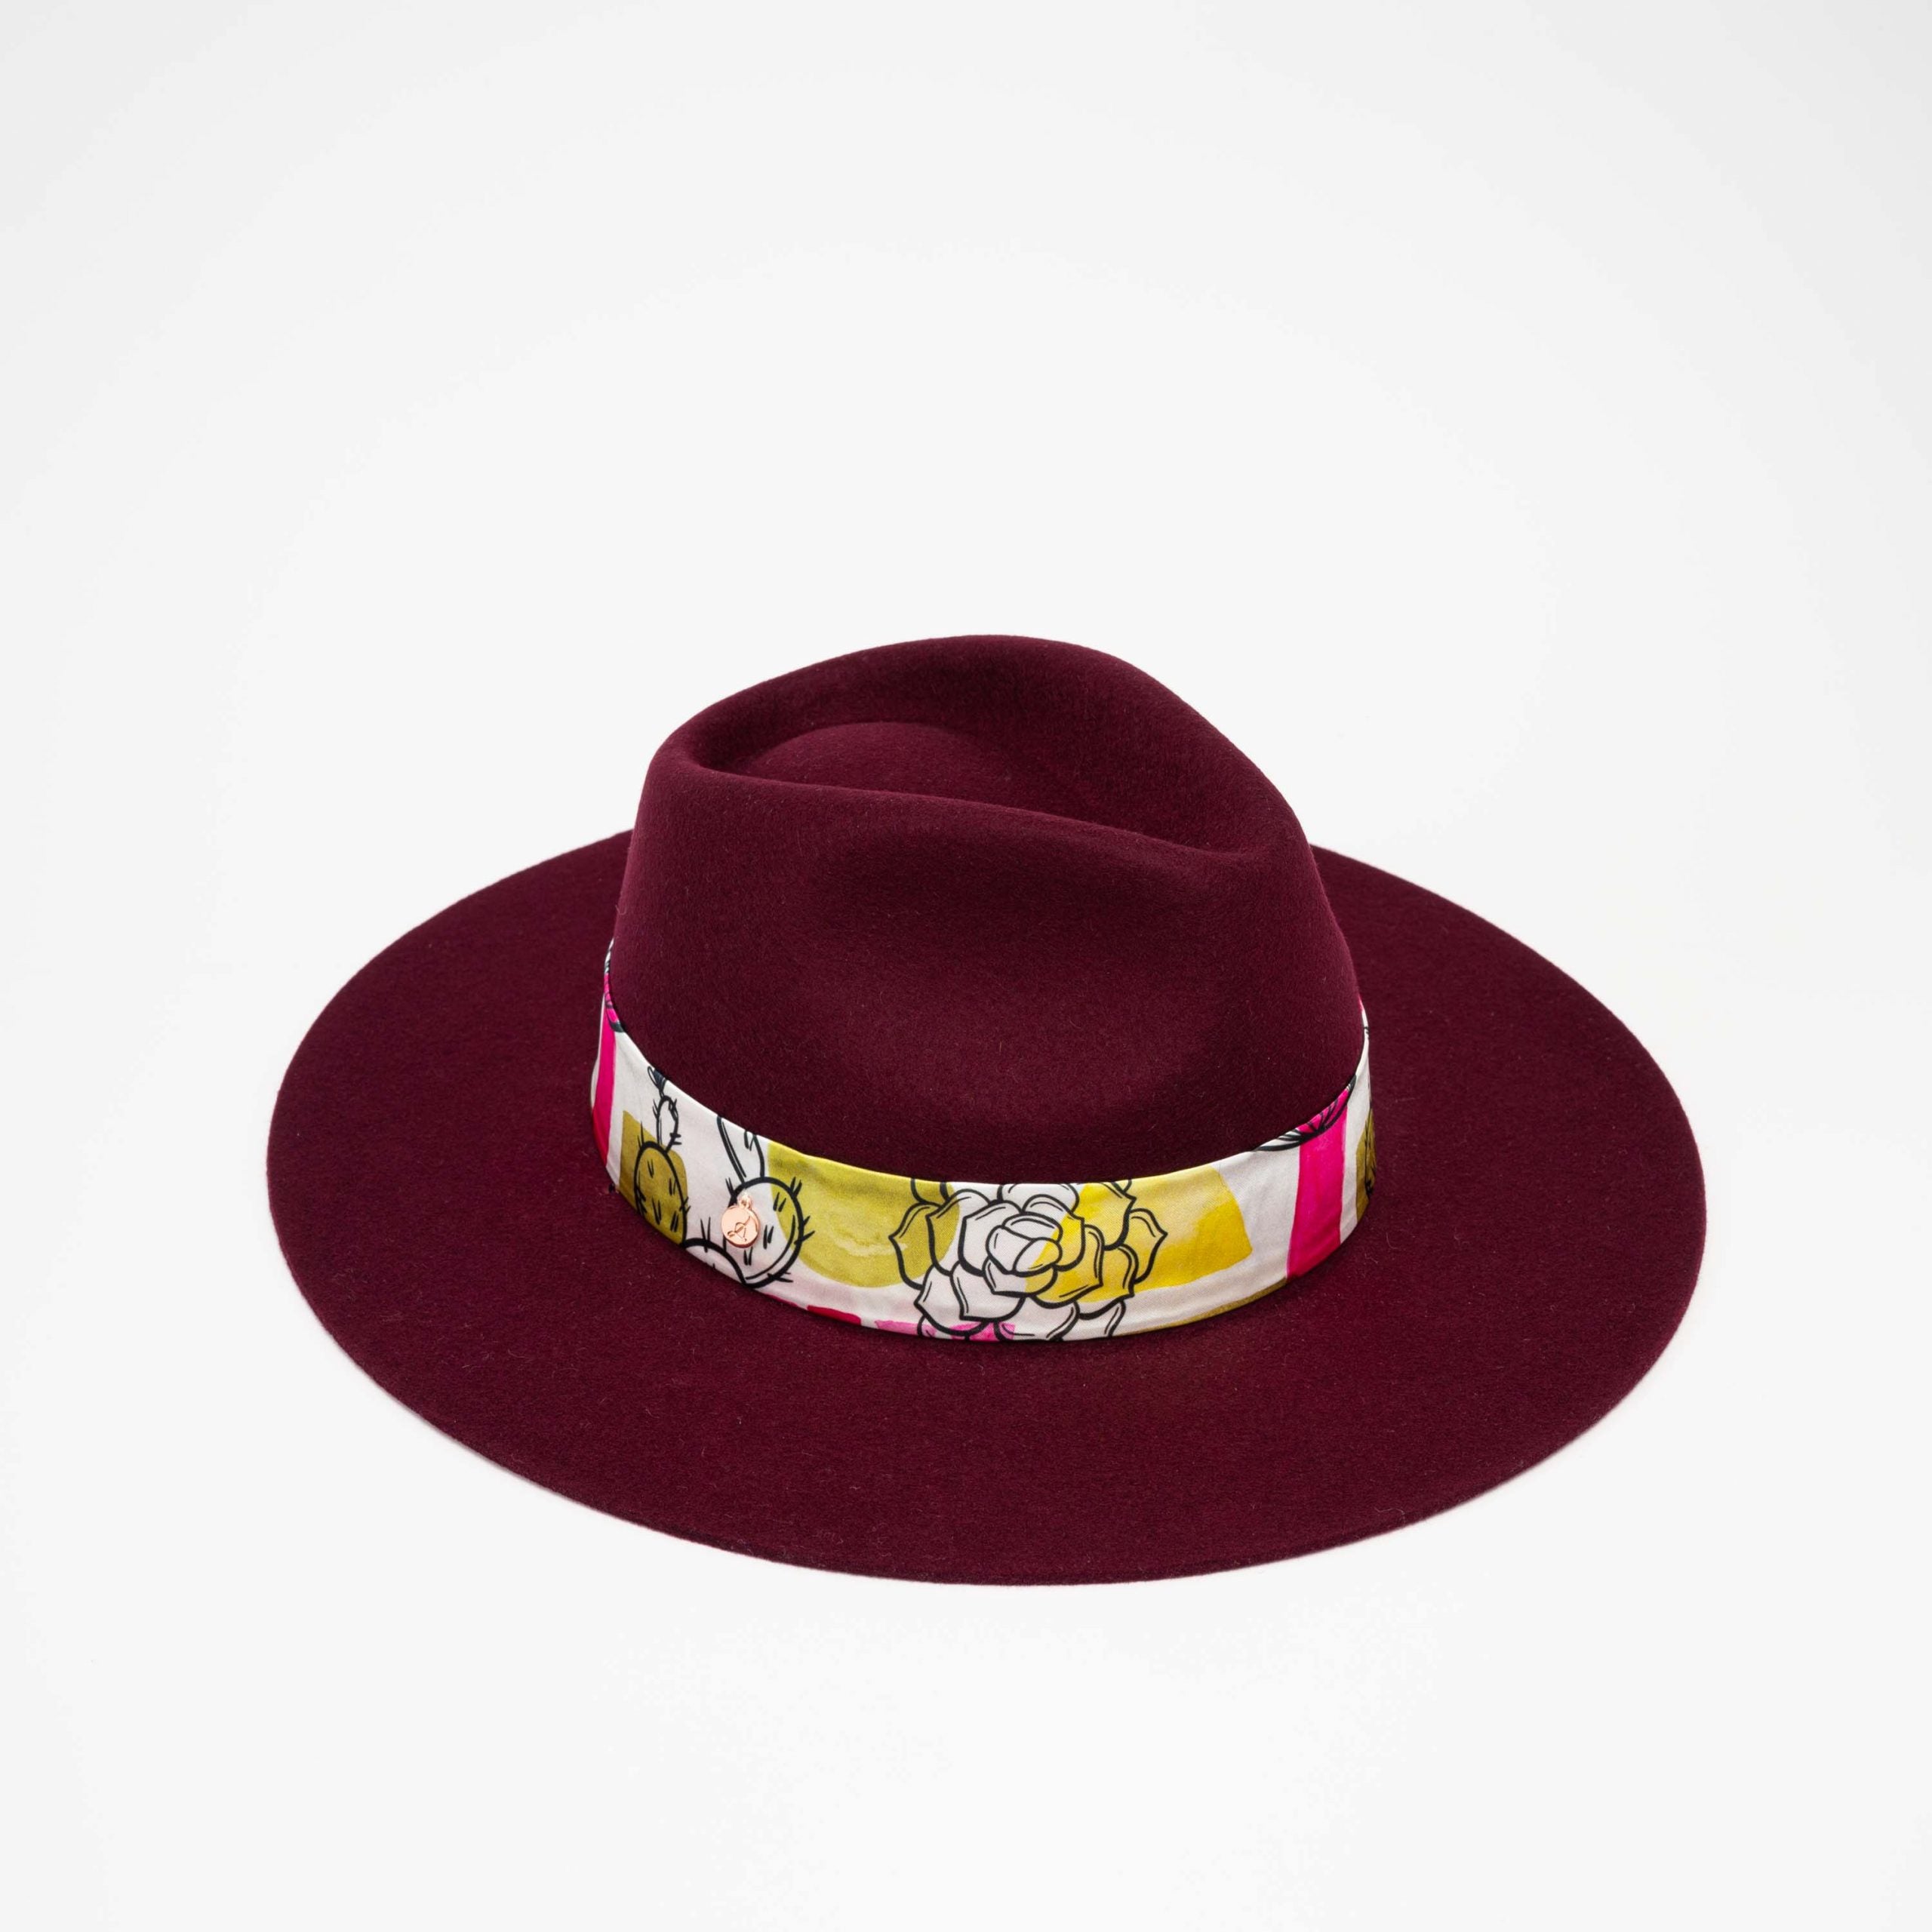 Chapeau Dakota bordeaux avec foulard